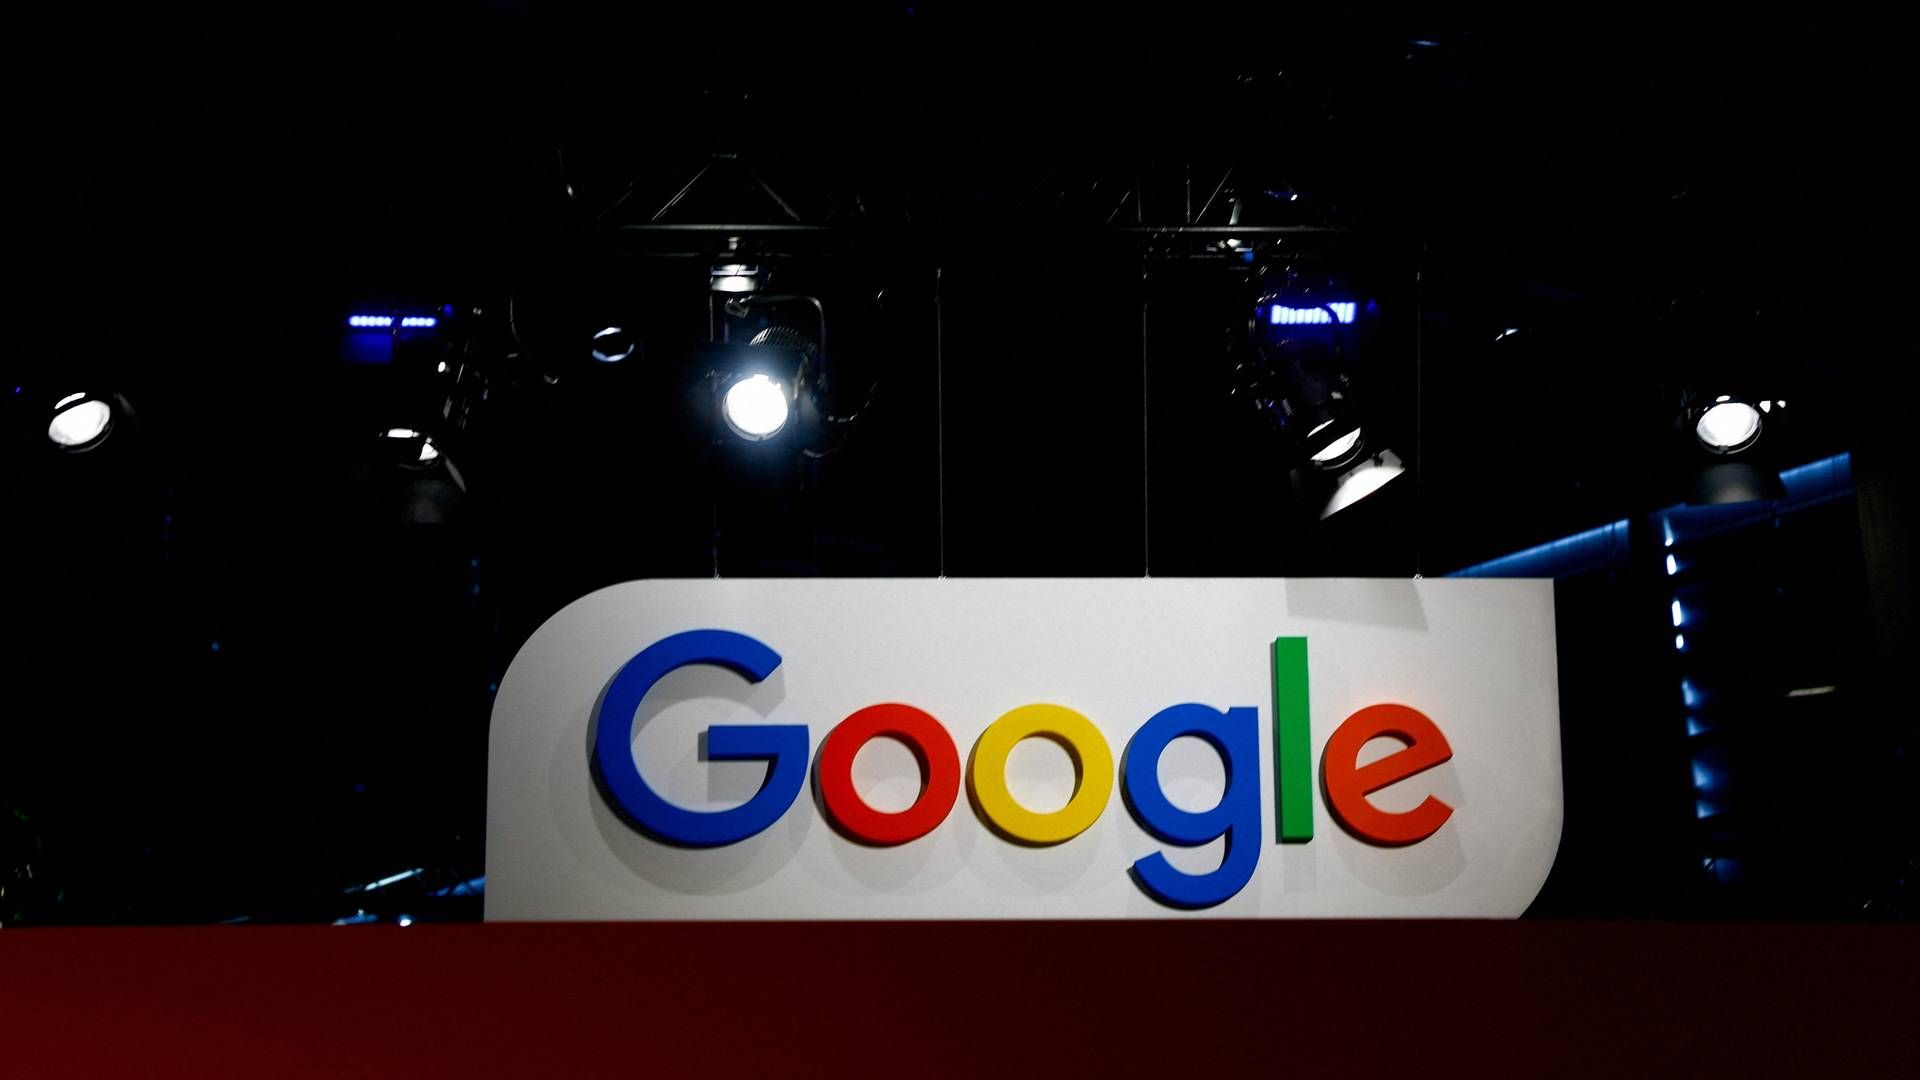 Google er nødt til at træffe ”svære valg", lyder budskabet fra Googles adm. direktør. | Foto: Gonzalo Fuentes/Reuters/Ritzau Scanpix